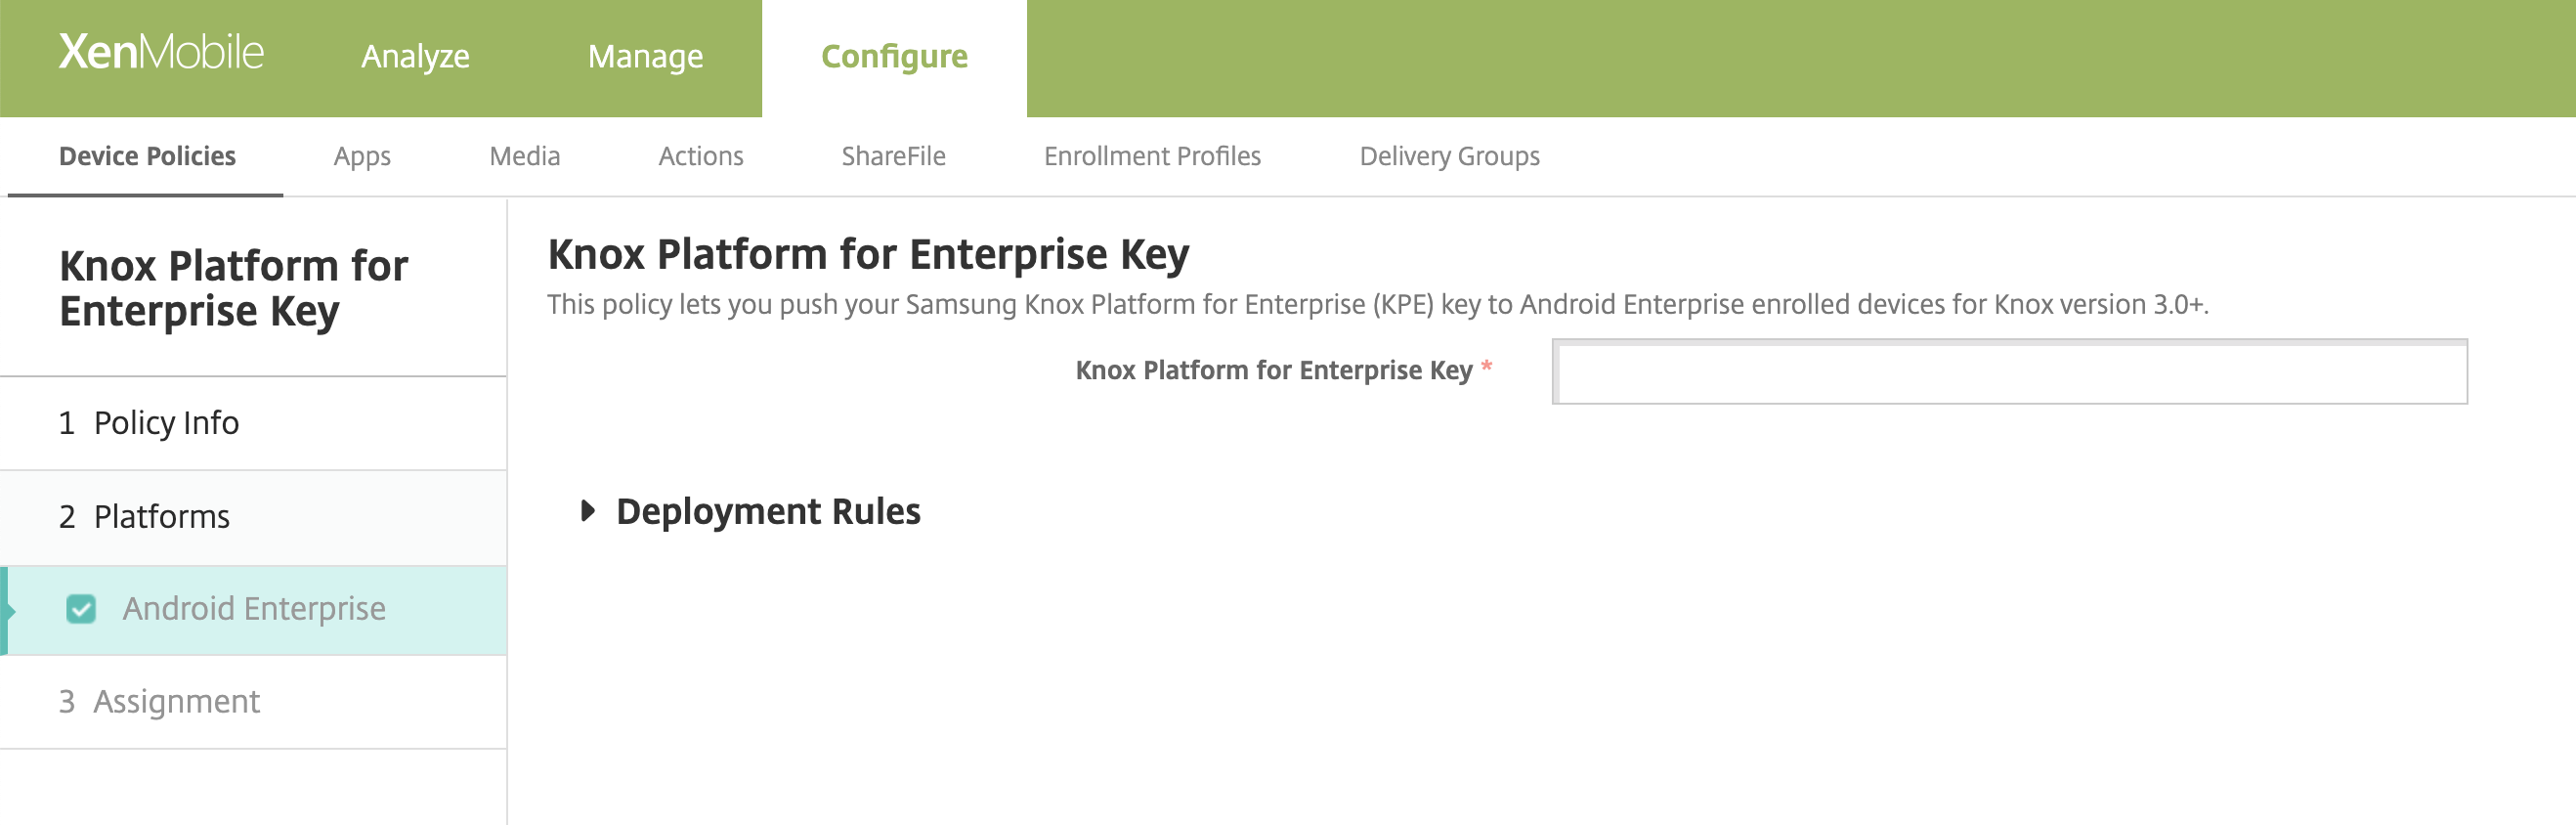 Abbildung: Bild der Geräterichtlinie "Knox Platform for Enterprise" für Android Enterprise